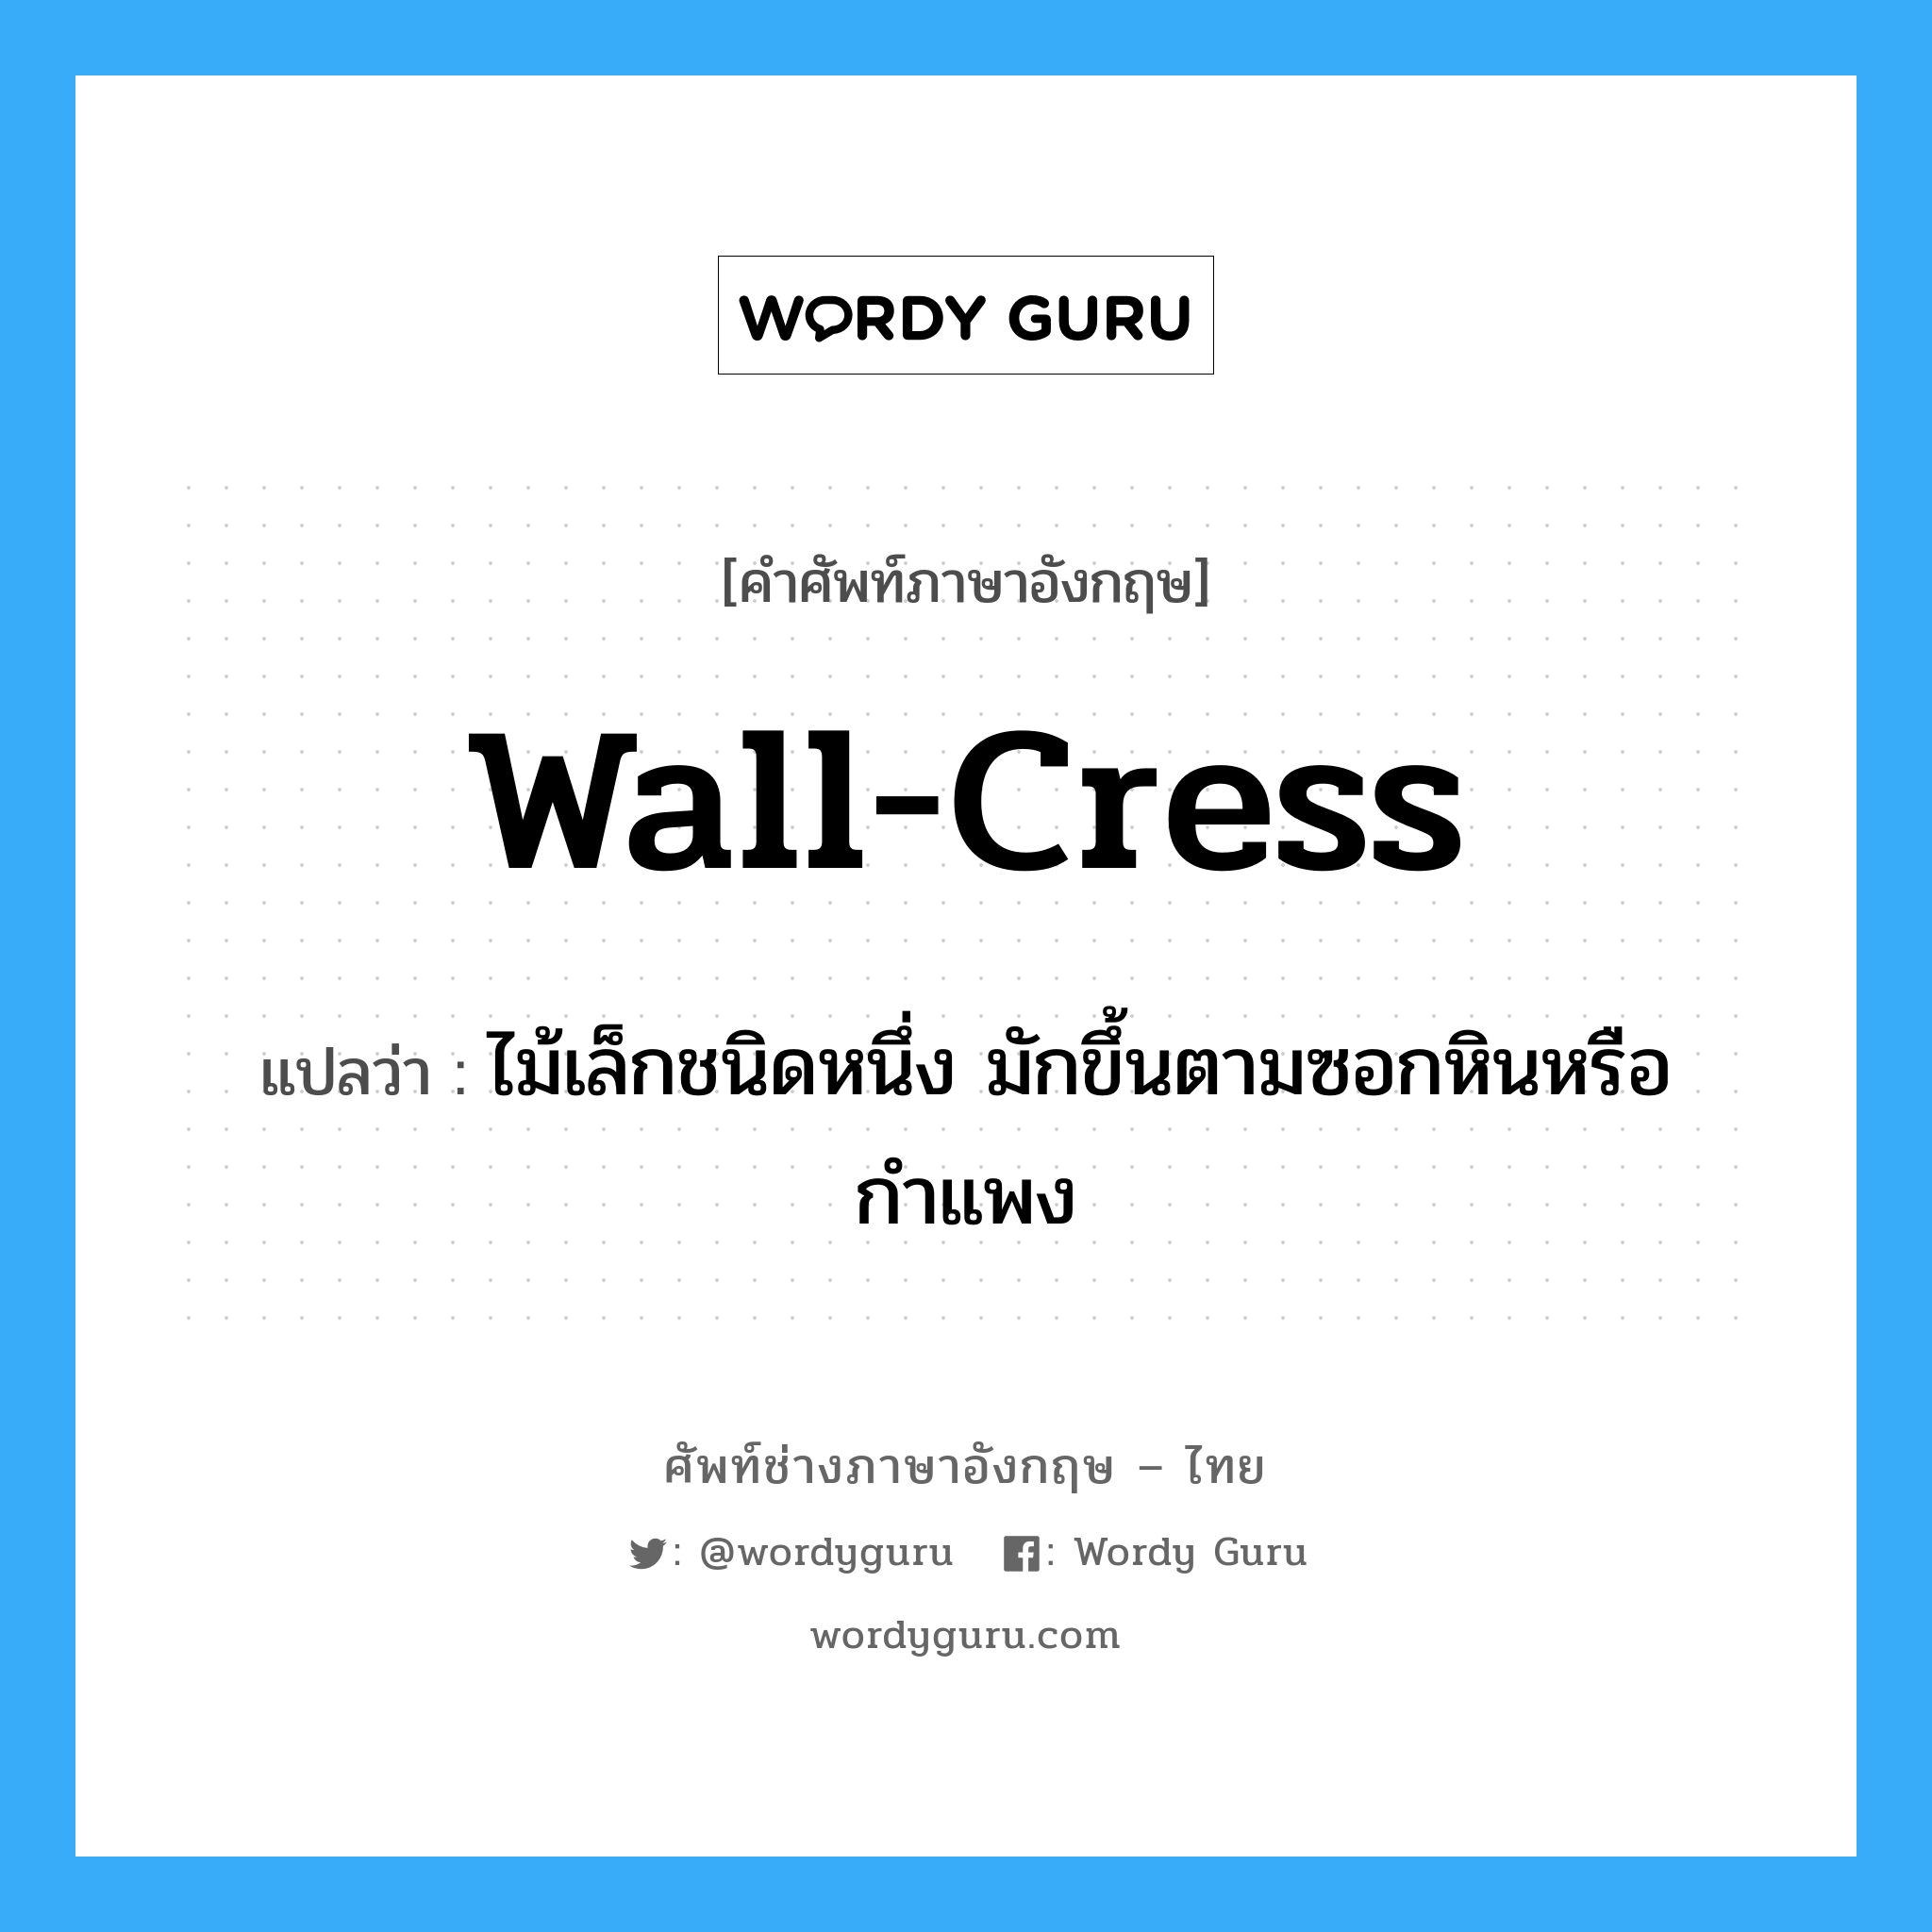 wall-cress แปลว่า?, คำศัพท์ช่างภาษาอังกฤษ - ไทย wall-cress คำศัพท์ภาษาอังกฤษ wall-cress แปลว่า ไม้เล็กชนิดหนึ่ง มักขึ้นตามซอกหินหรือกำแพง